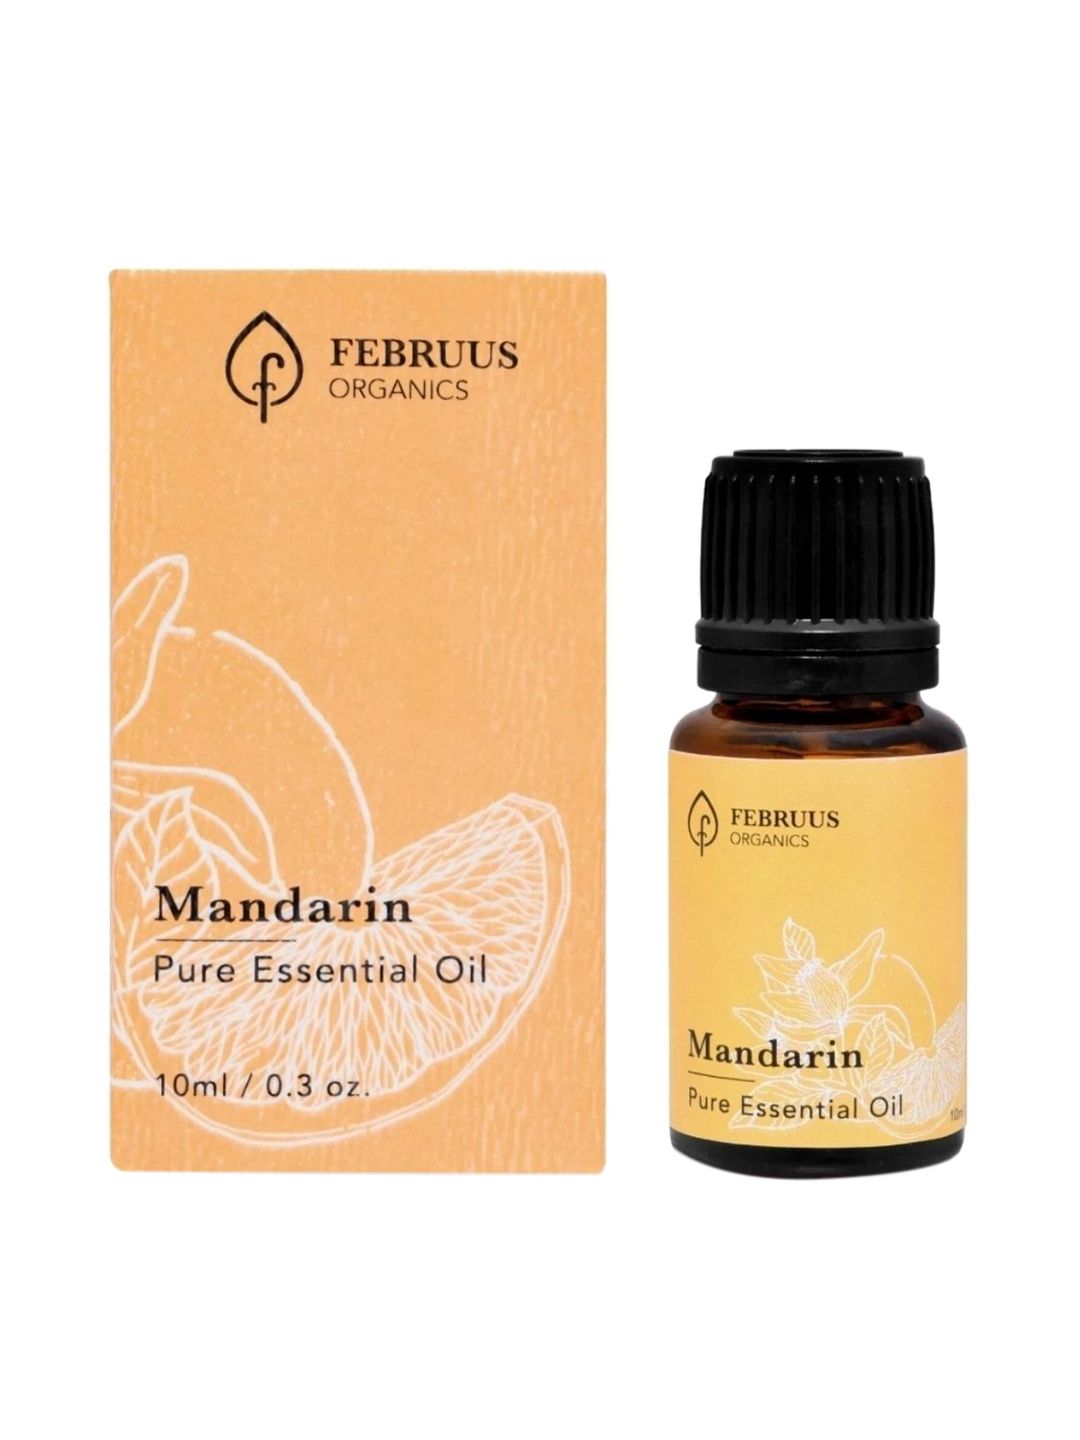 Februus Organics Mandarin Essential Oil 10 ml Price in India